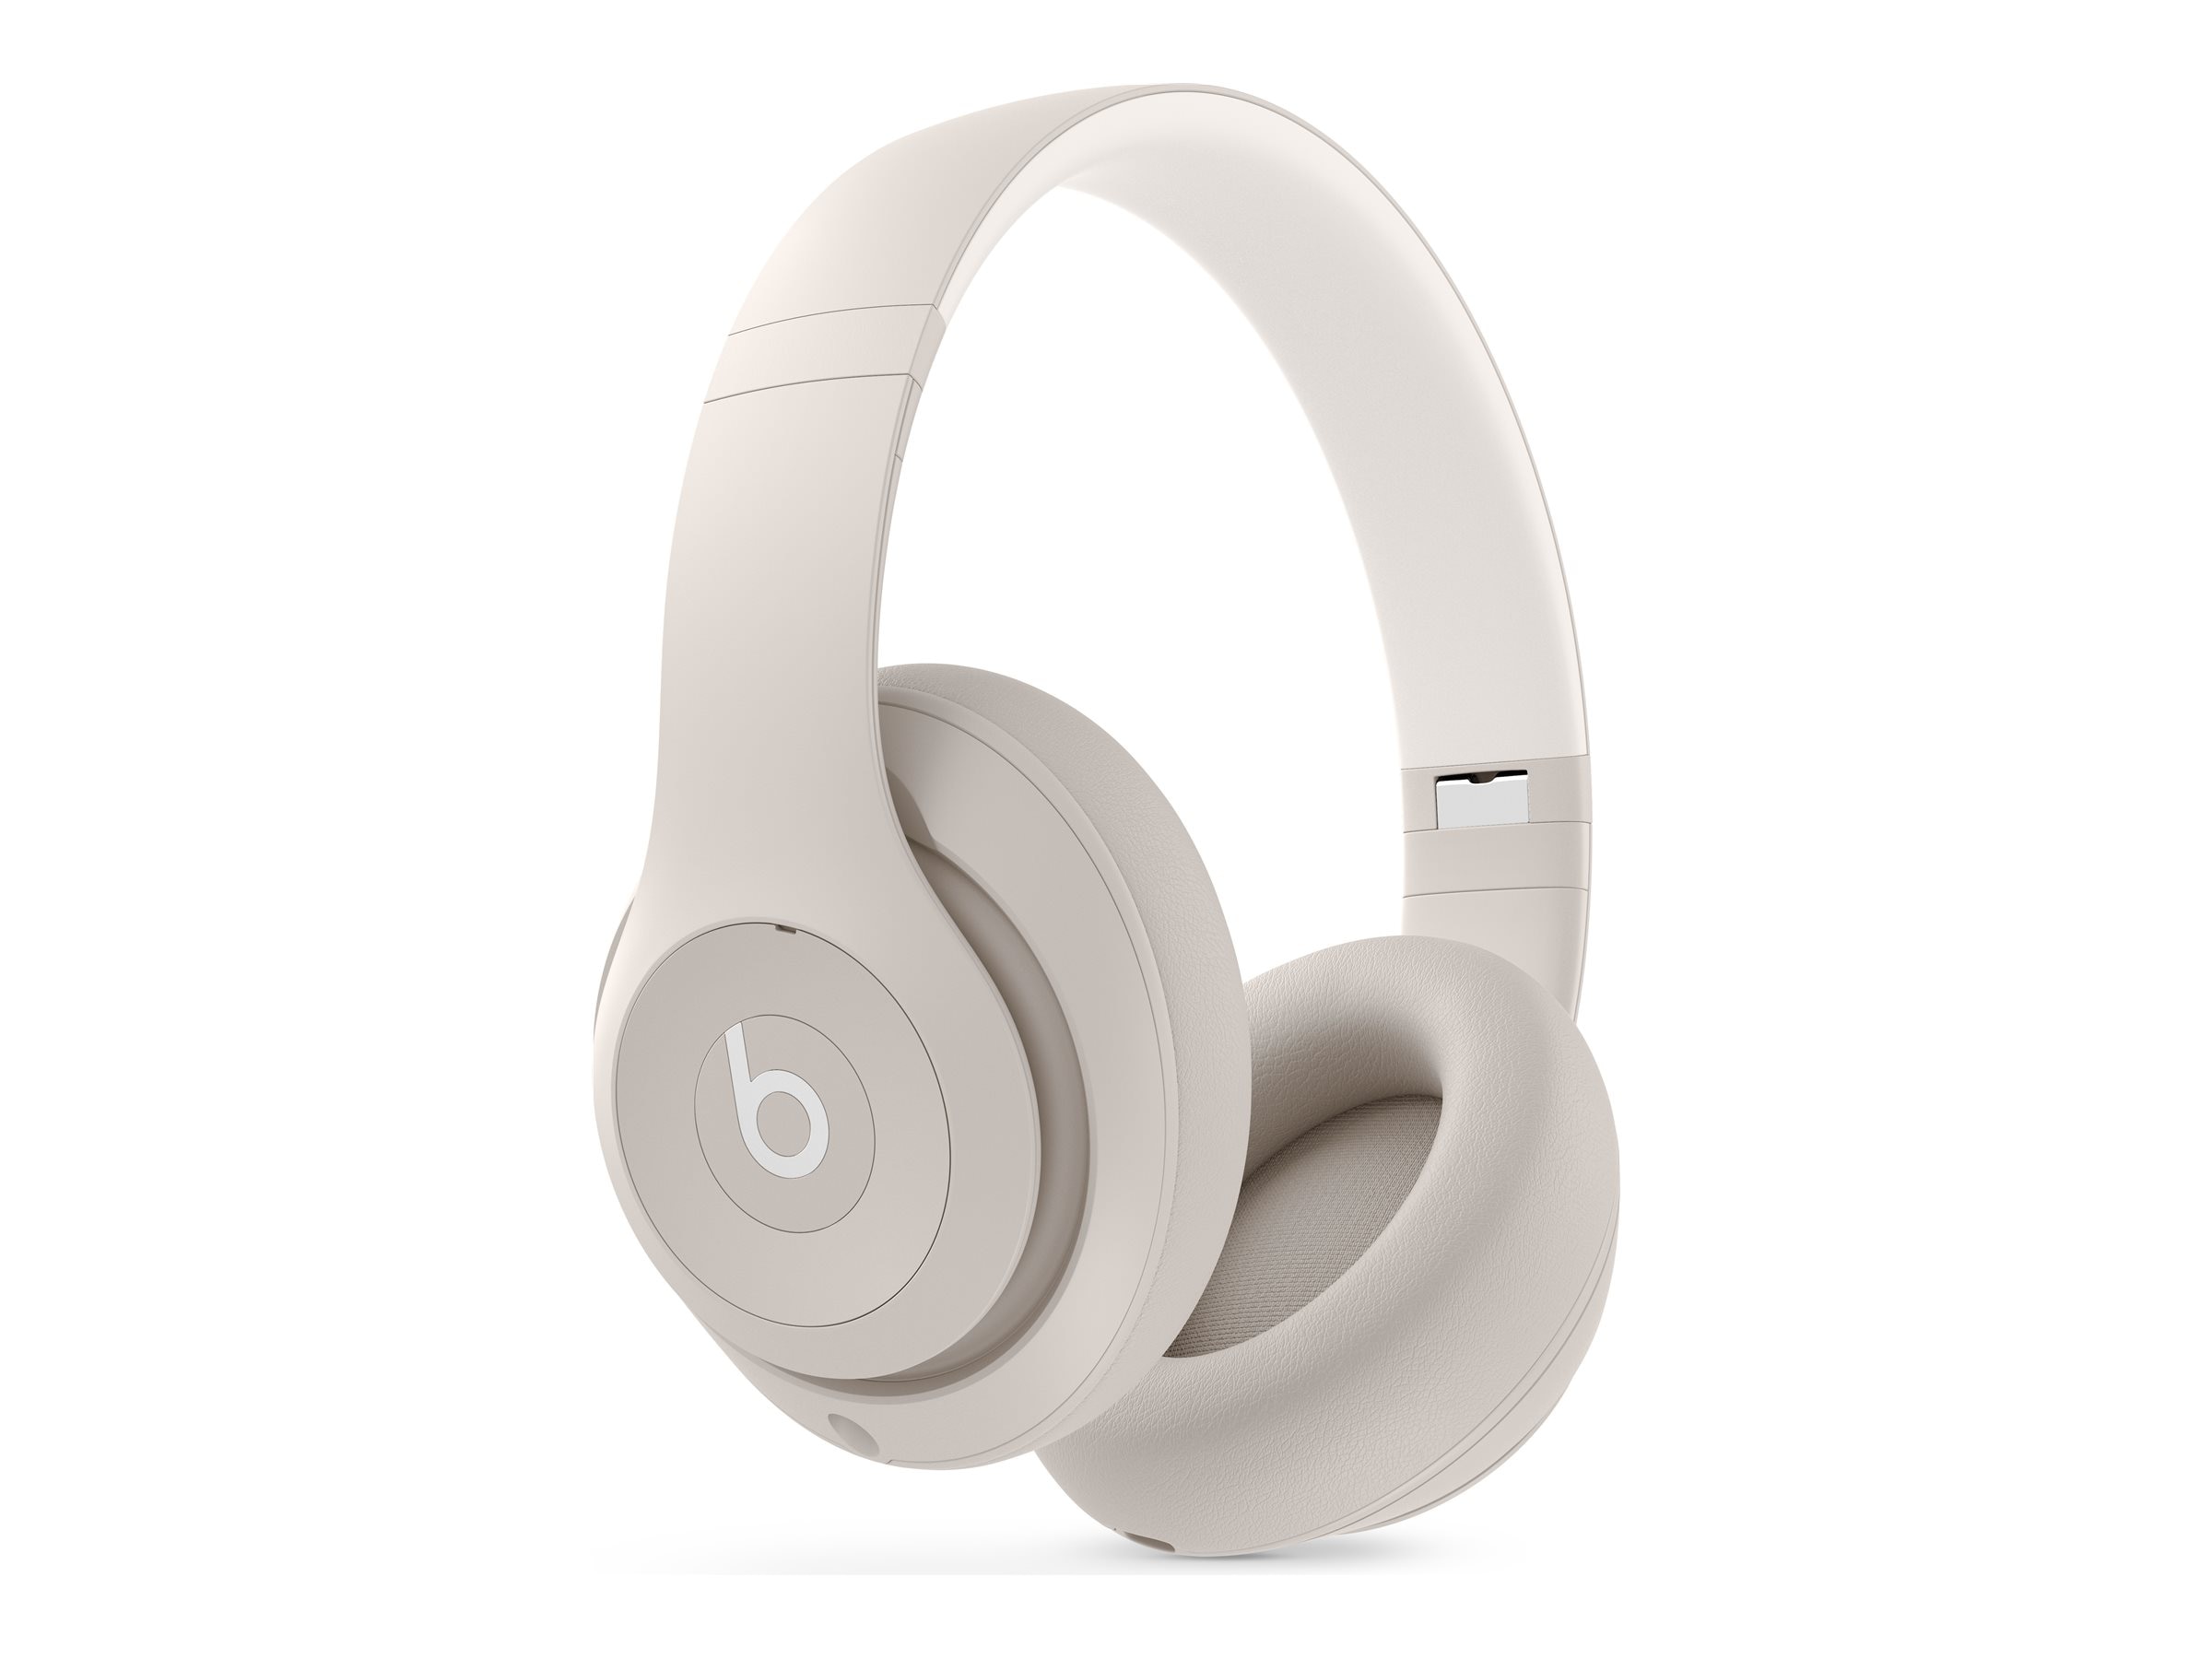 Buy Apple Beats Studio Pro Wireless Headphones - Sandstone at